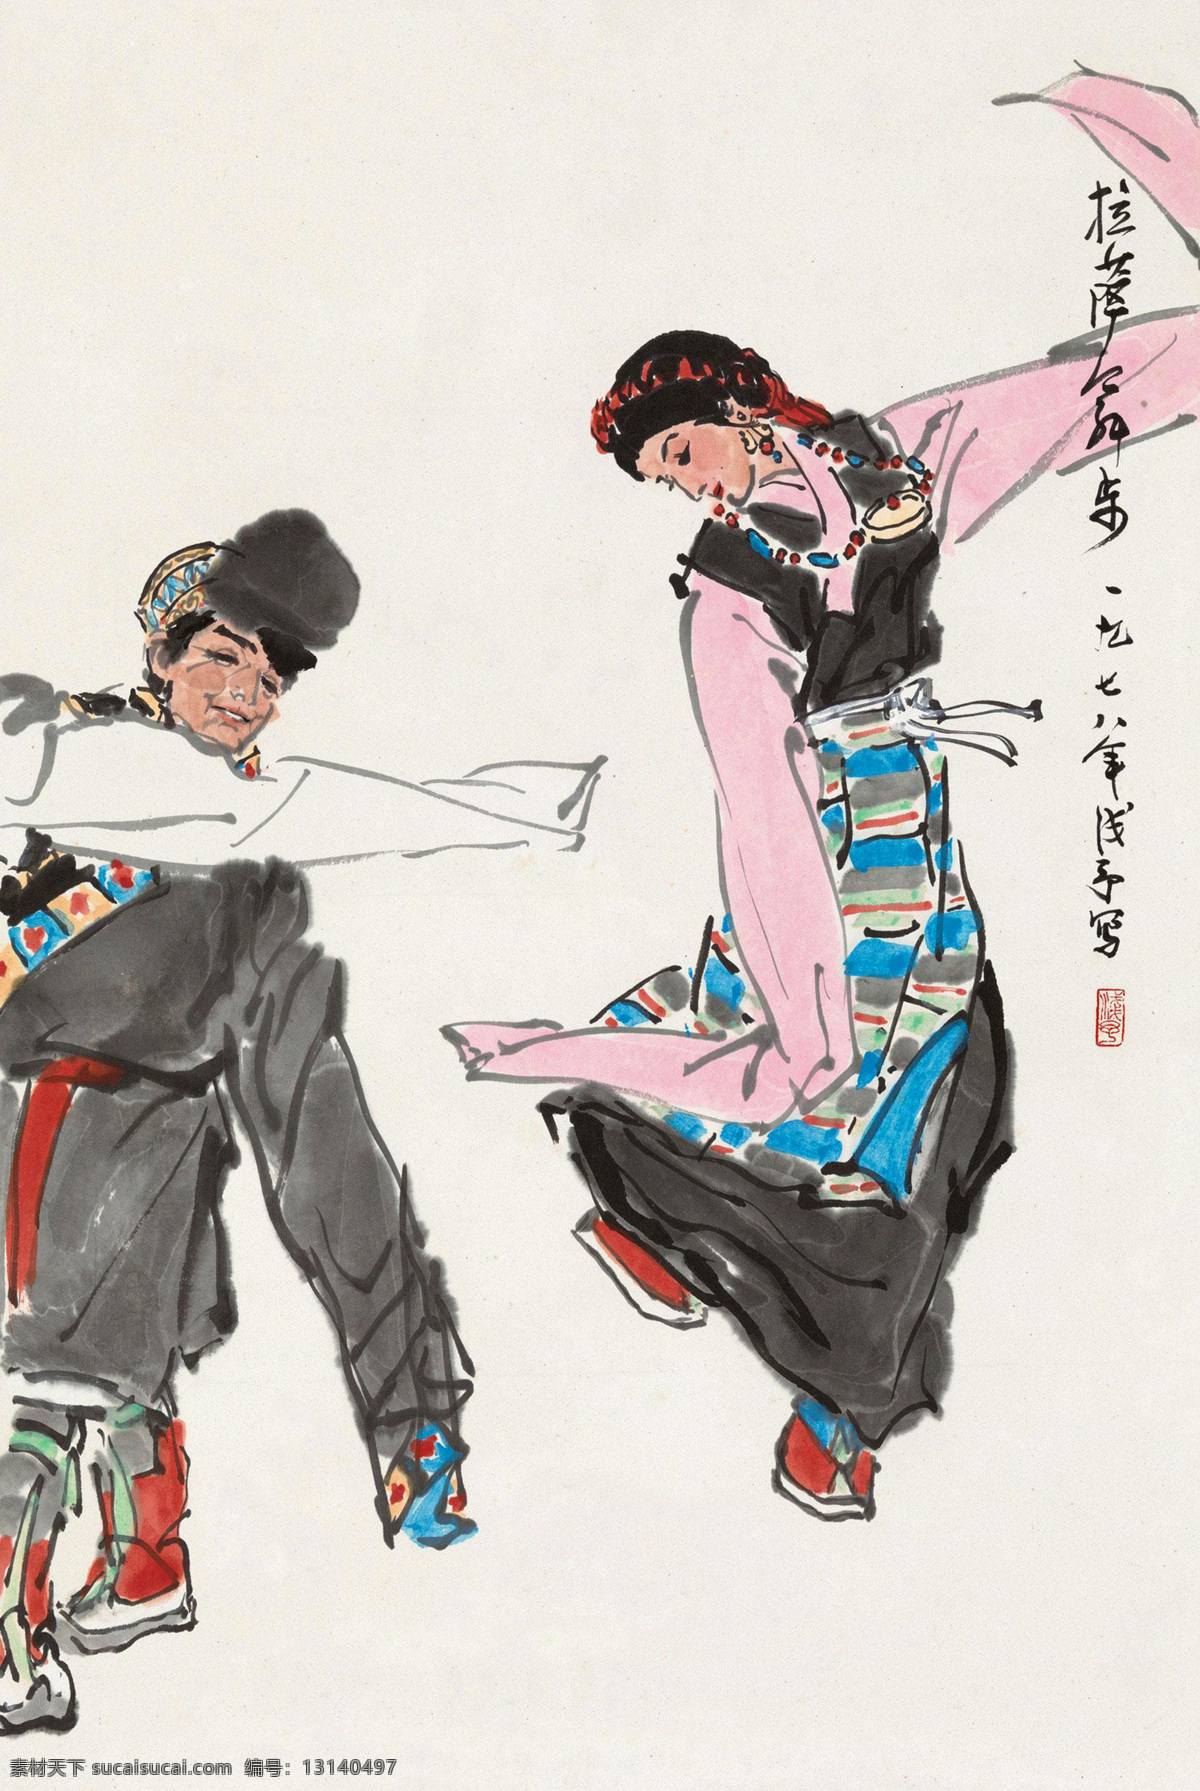 藏族 风情 国画 绘画书法 人物速写 速写 文化艺术 拉萨舞步 叶浅予 藏族舞 民族舞蹈 舞蹈 民族风情 国画叶浅予 psd源文件